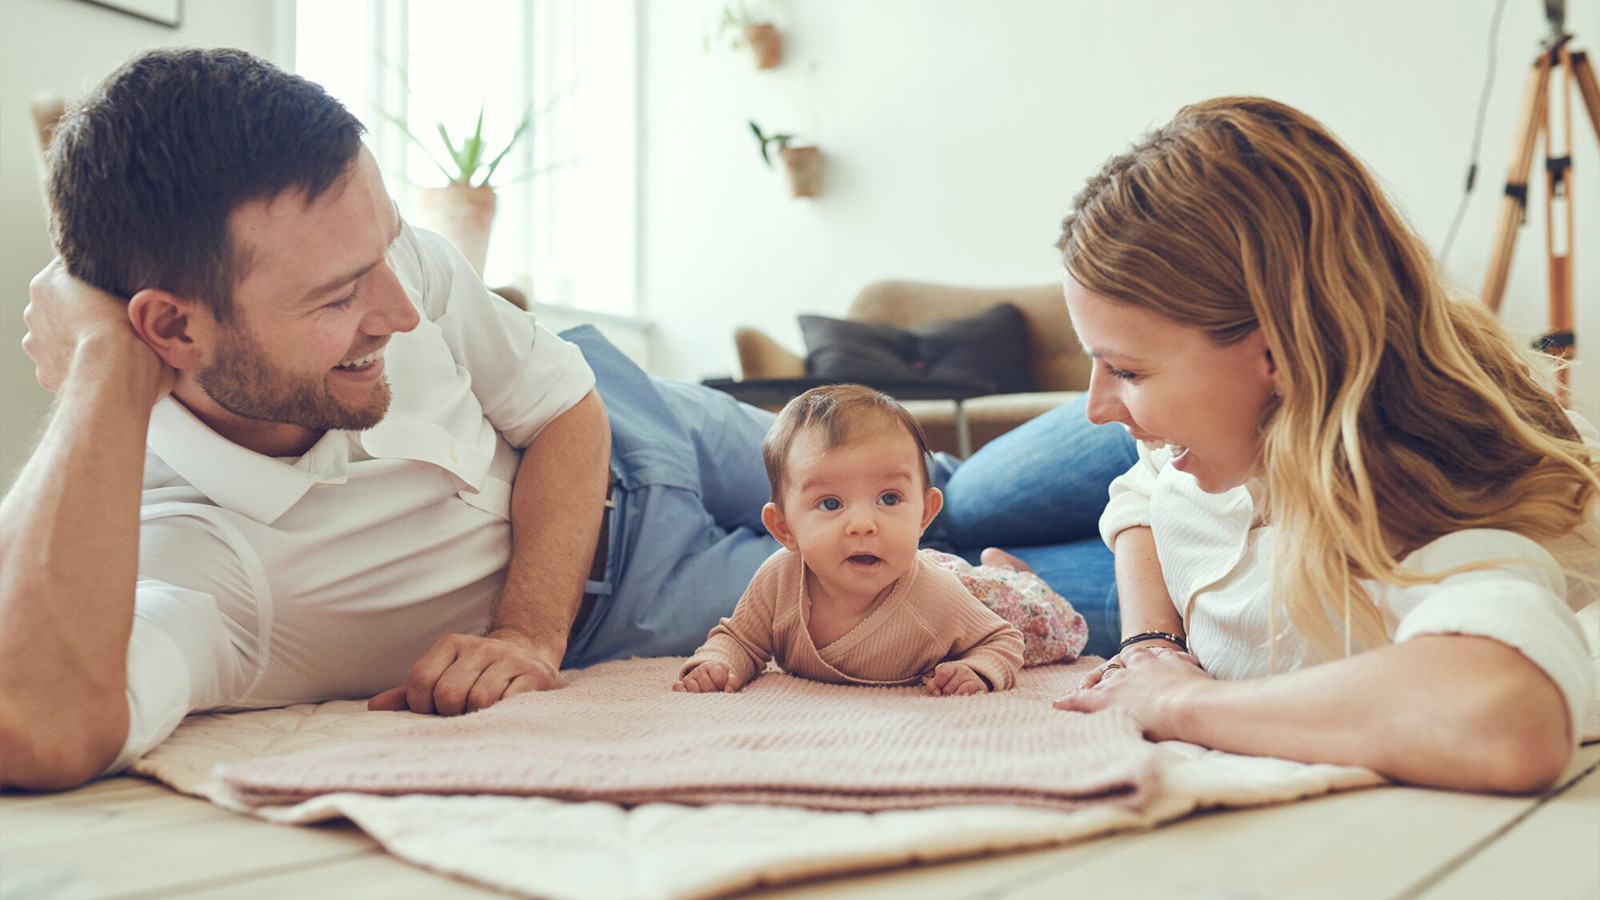 madre y padre jugando sobre una manta con un bebé, padres inmigrantes, ciudadanía